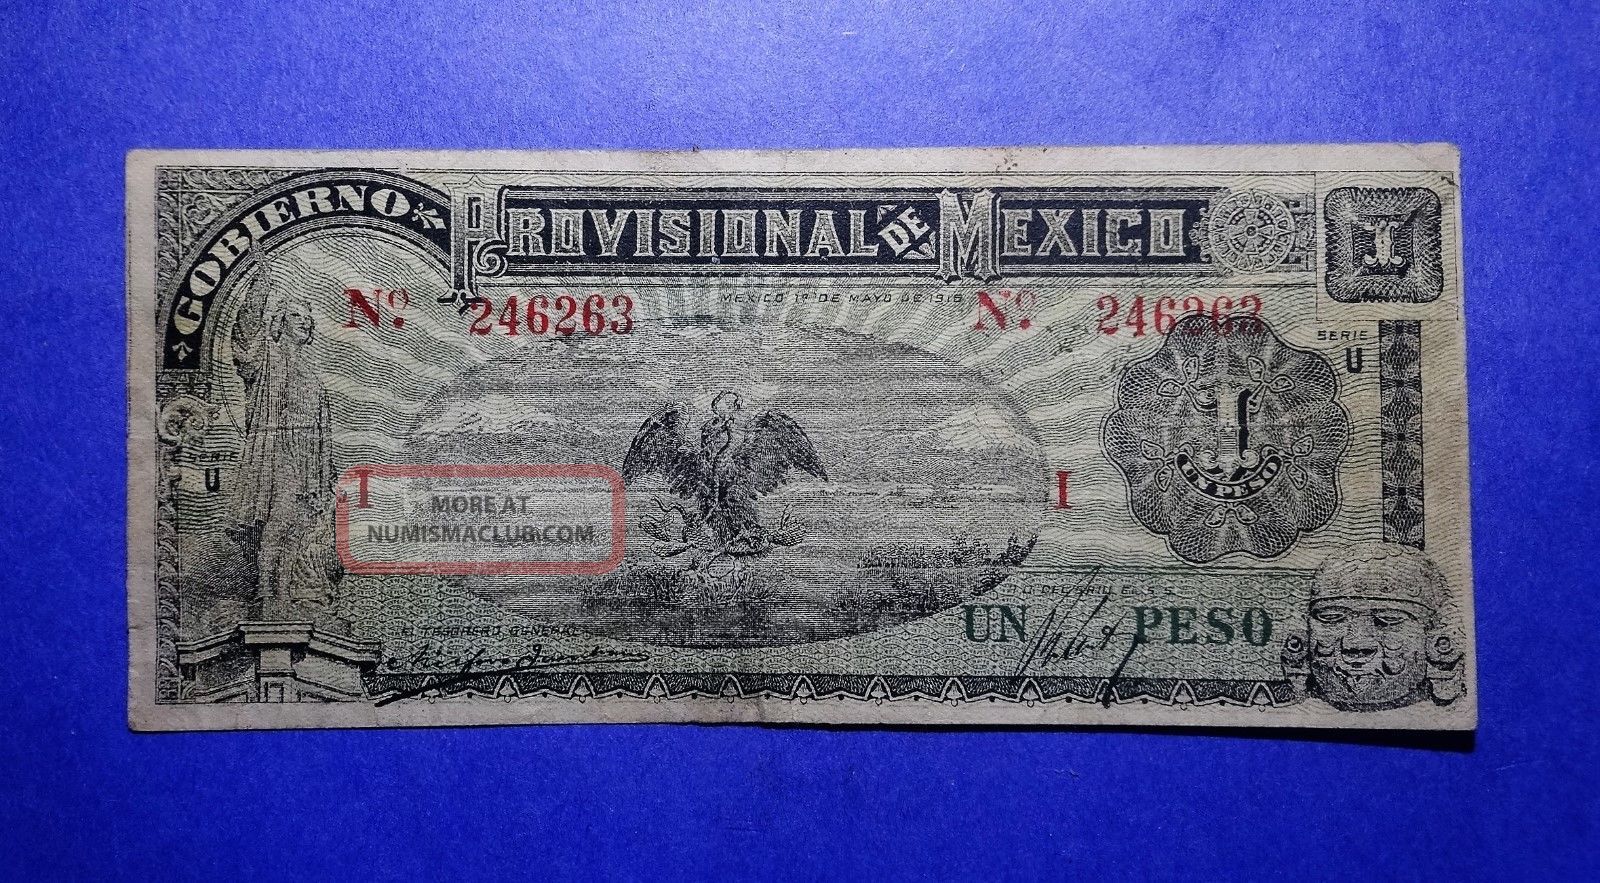 1916 Provisional Mexico Un One Peso Note